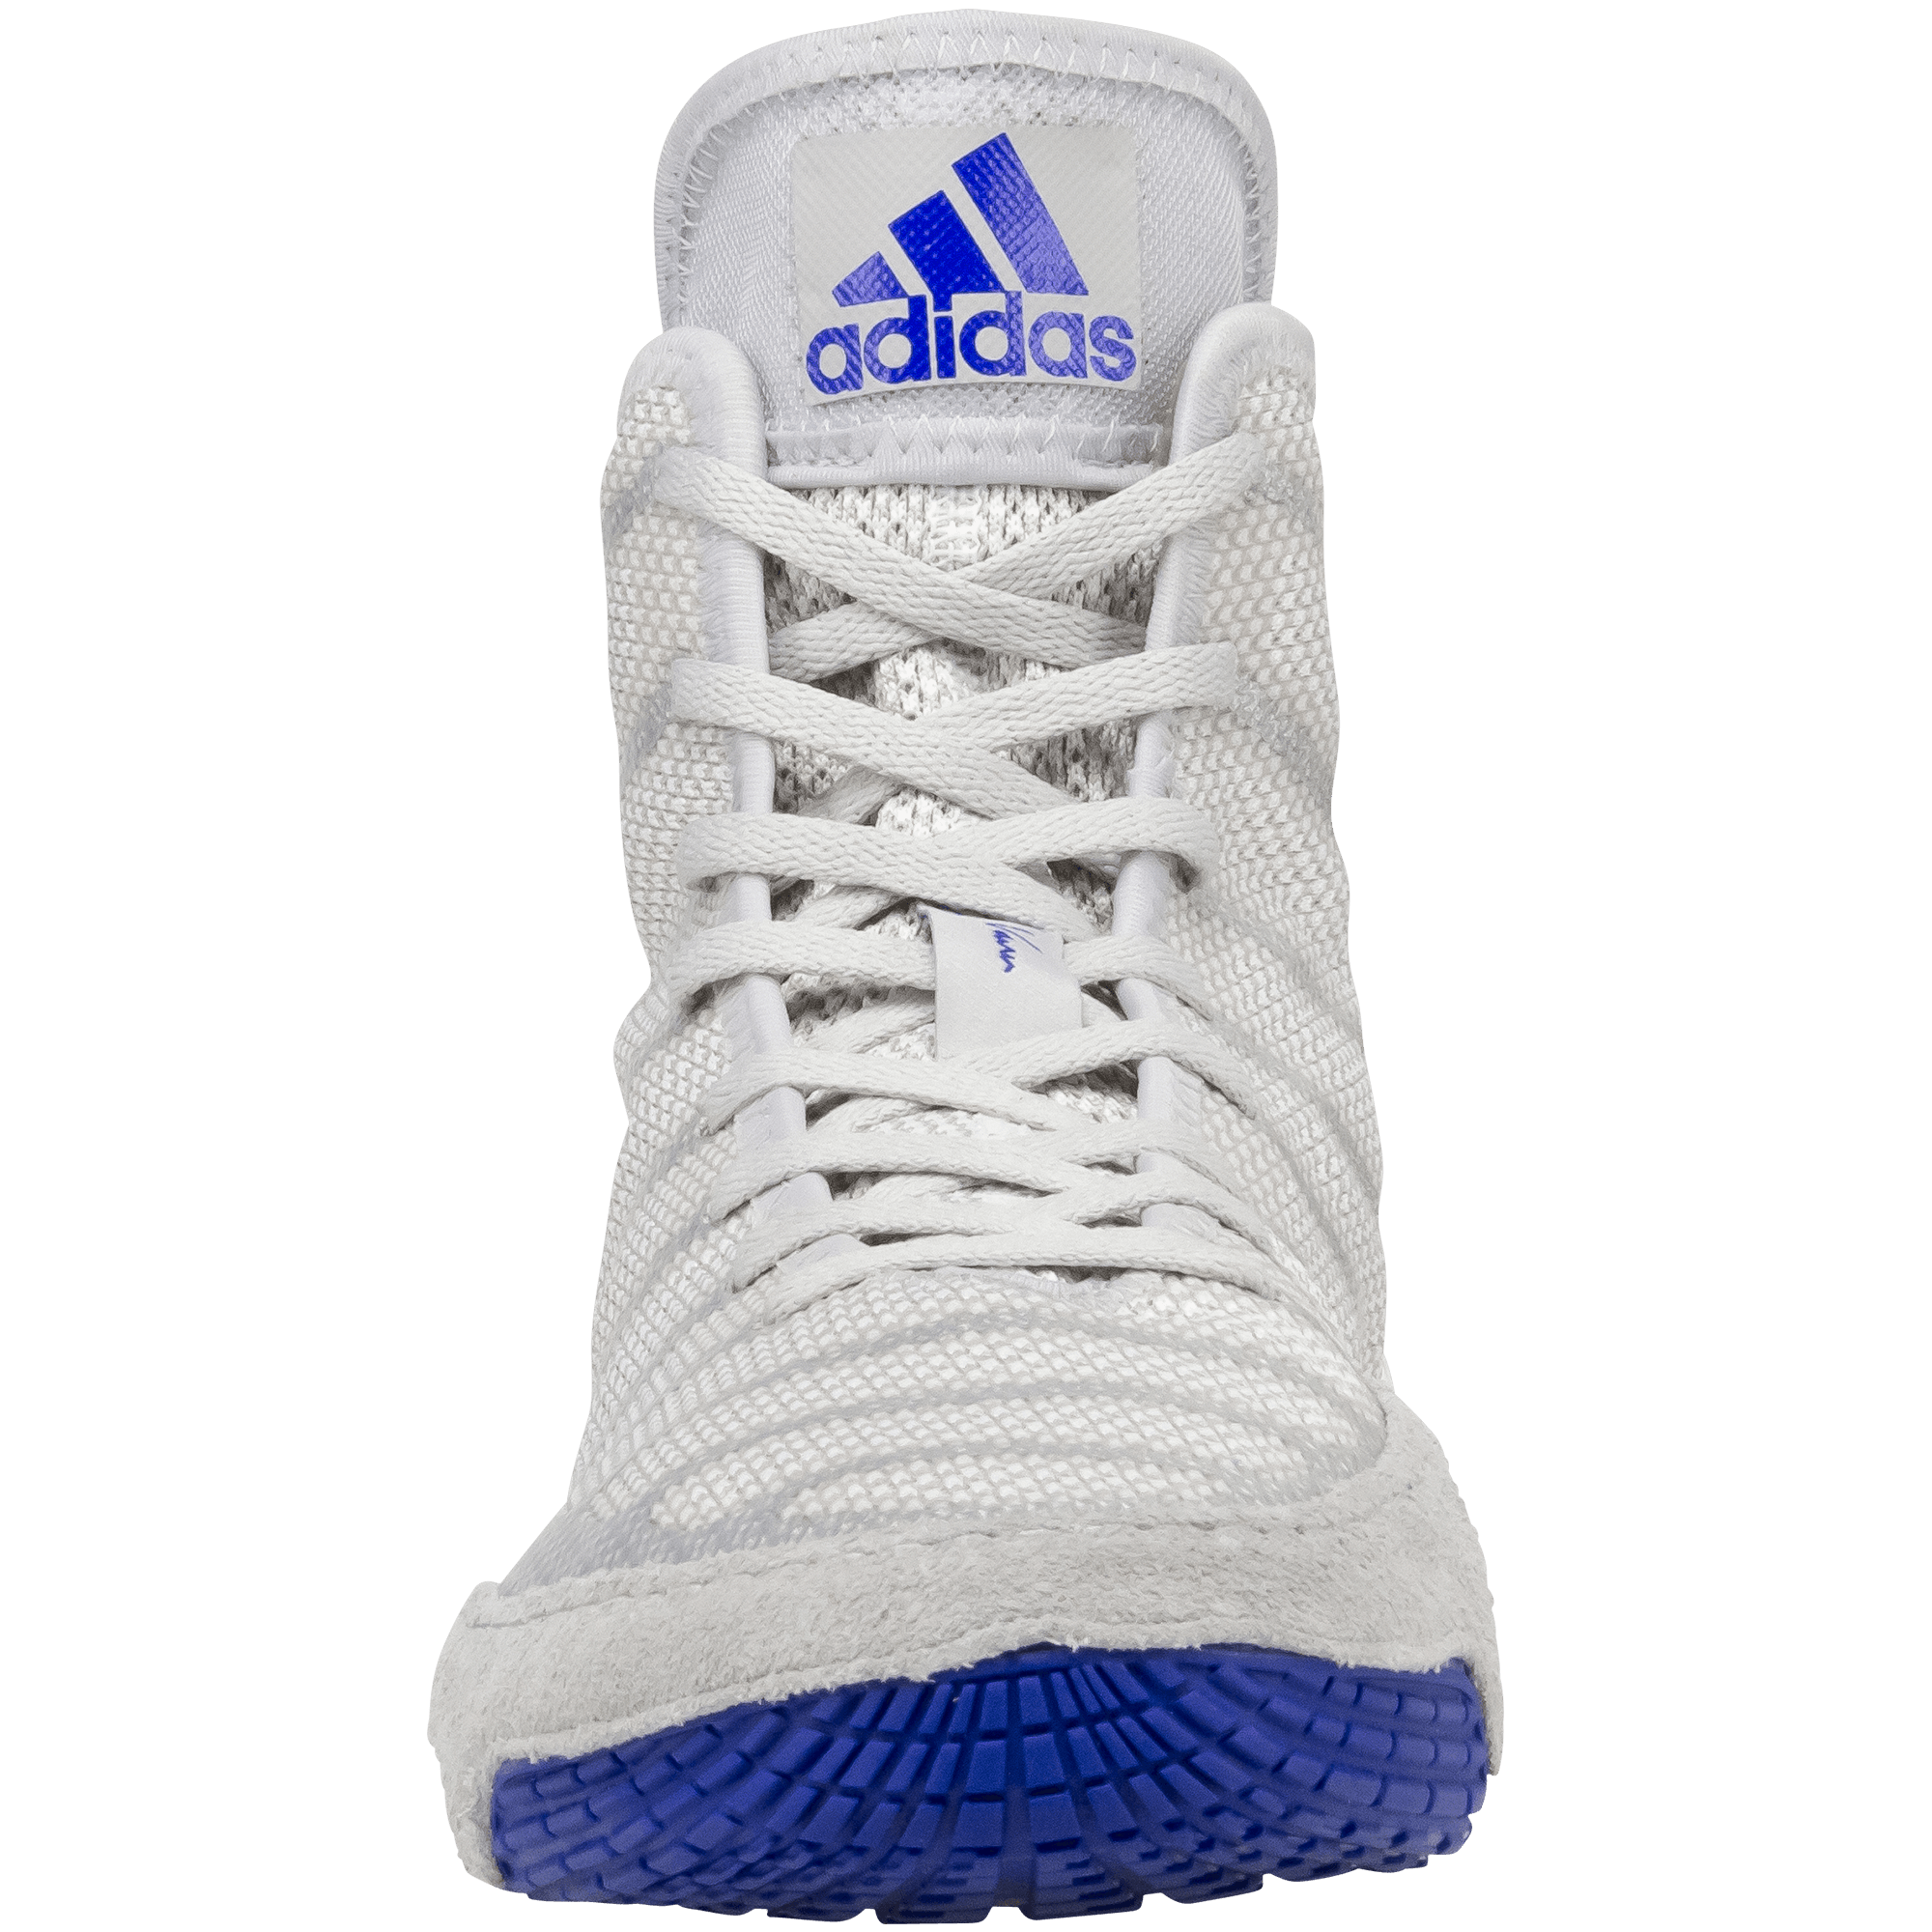 Blue and White Adidas Logo - Adidas adiZero Varner 2 Shoes